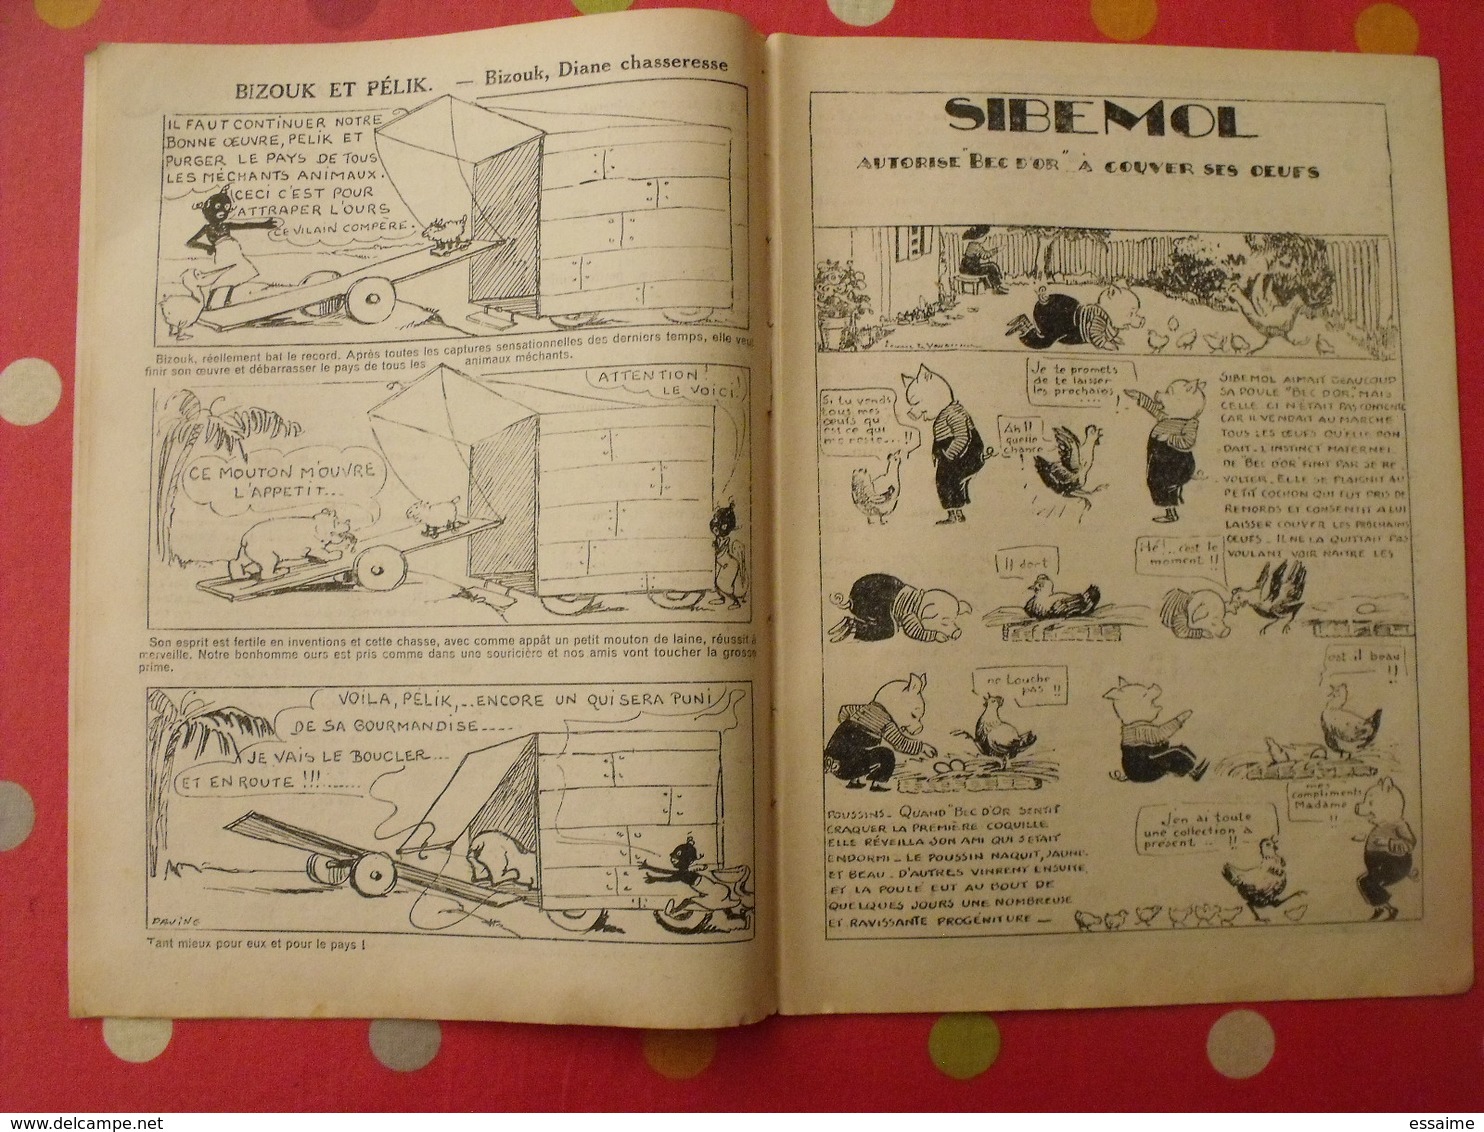 lot de 12 revues "le journal de bébé" de 1938. pouf davine rob-vel rotman rogelon pélik polydor